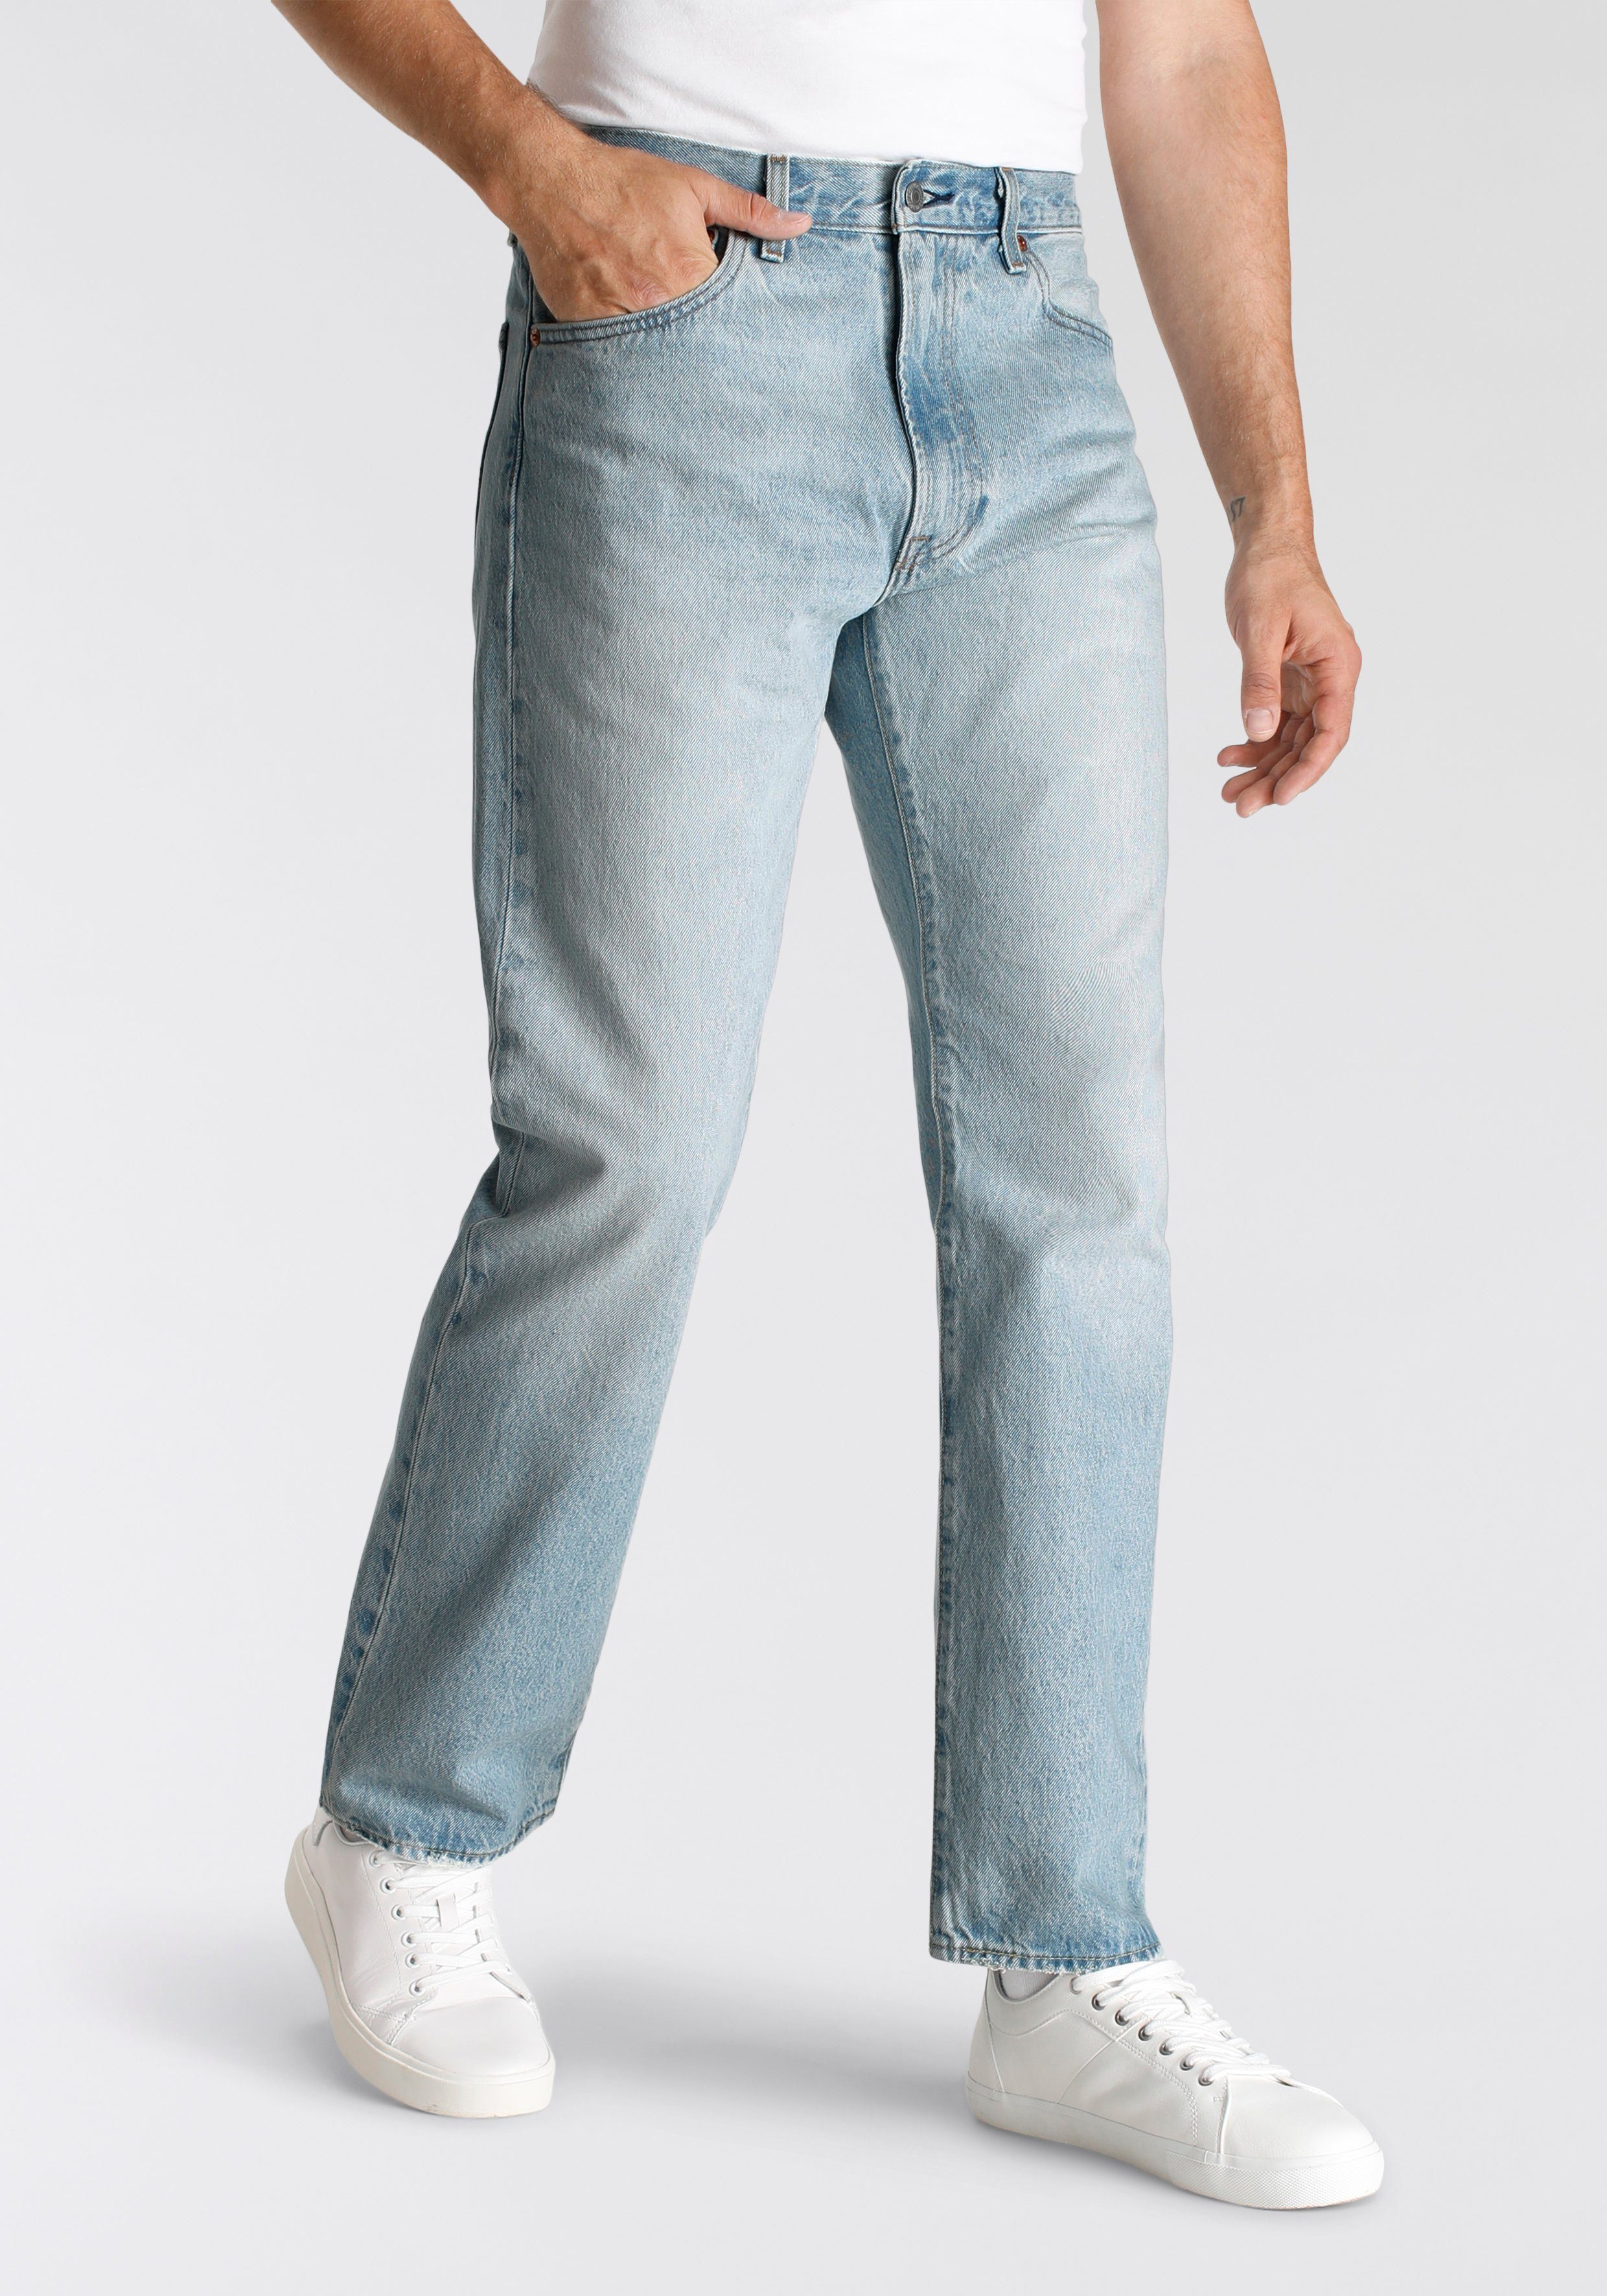 Lederbadge mit just 551Z me Levi's® AUTHENTIC squeez Straight-Jeans